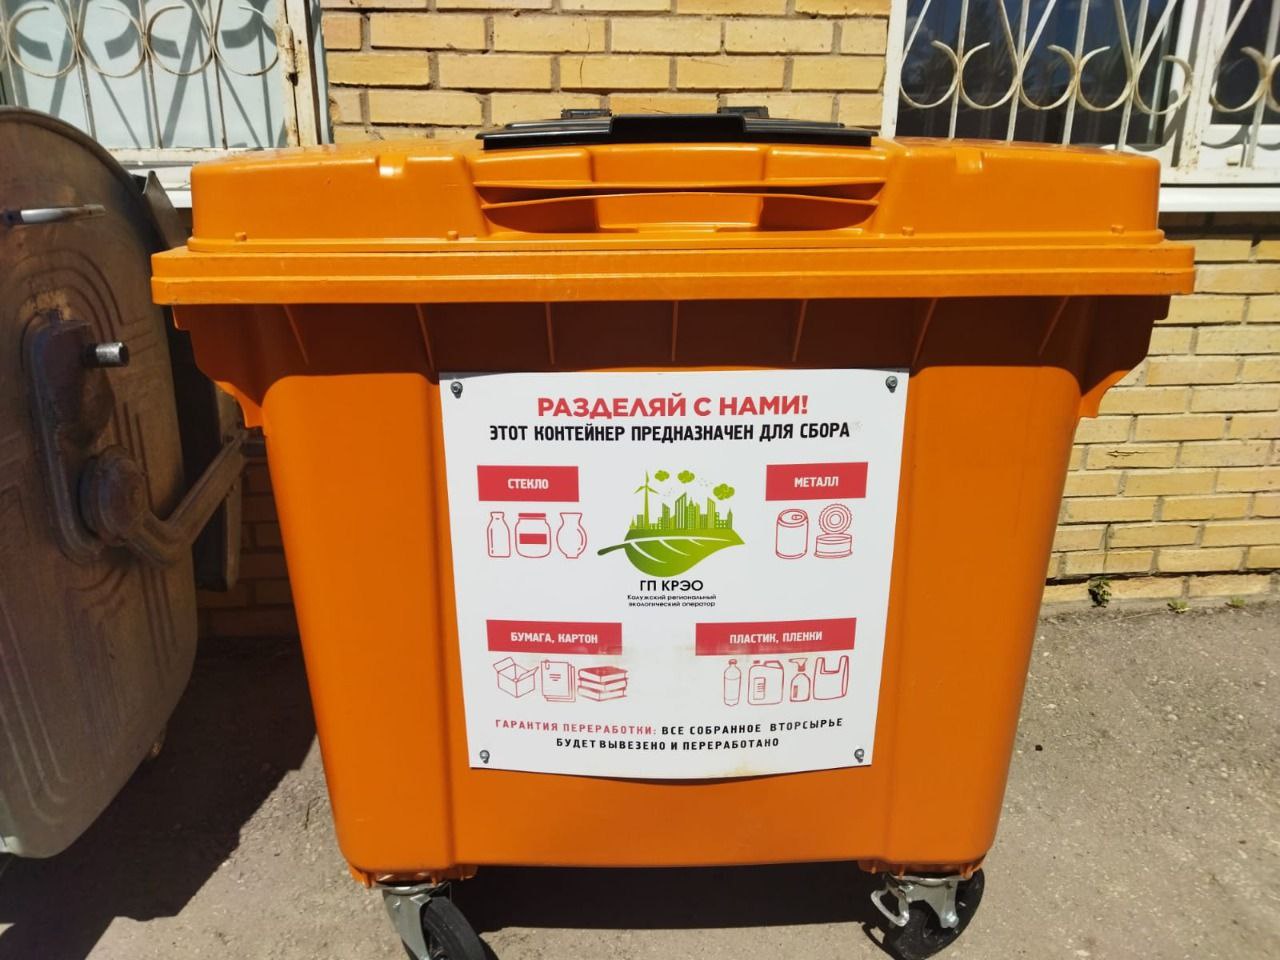 Ежегодно в Калужской области с помощью контейнеров для раздельного сбора отходов направляют на переработку около 96 тыс. кубометров вторсырья